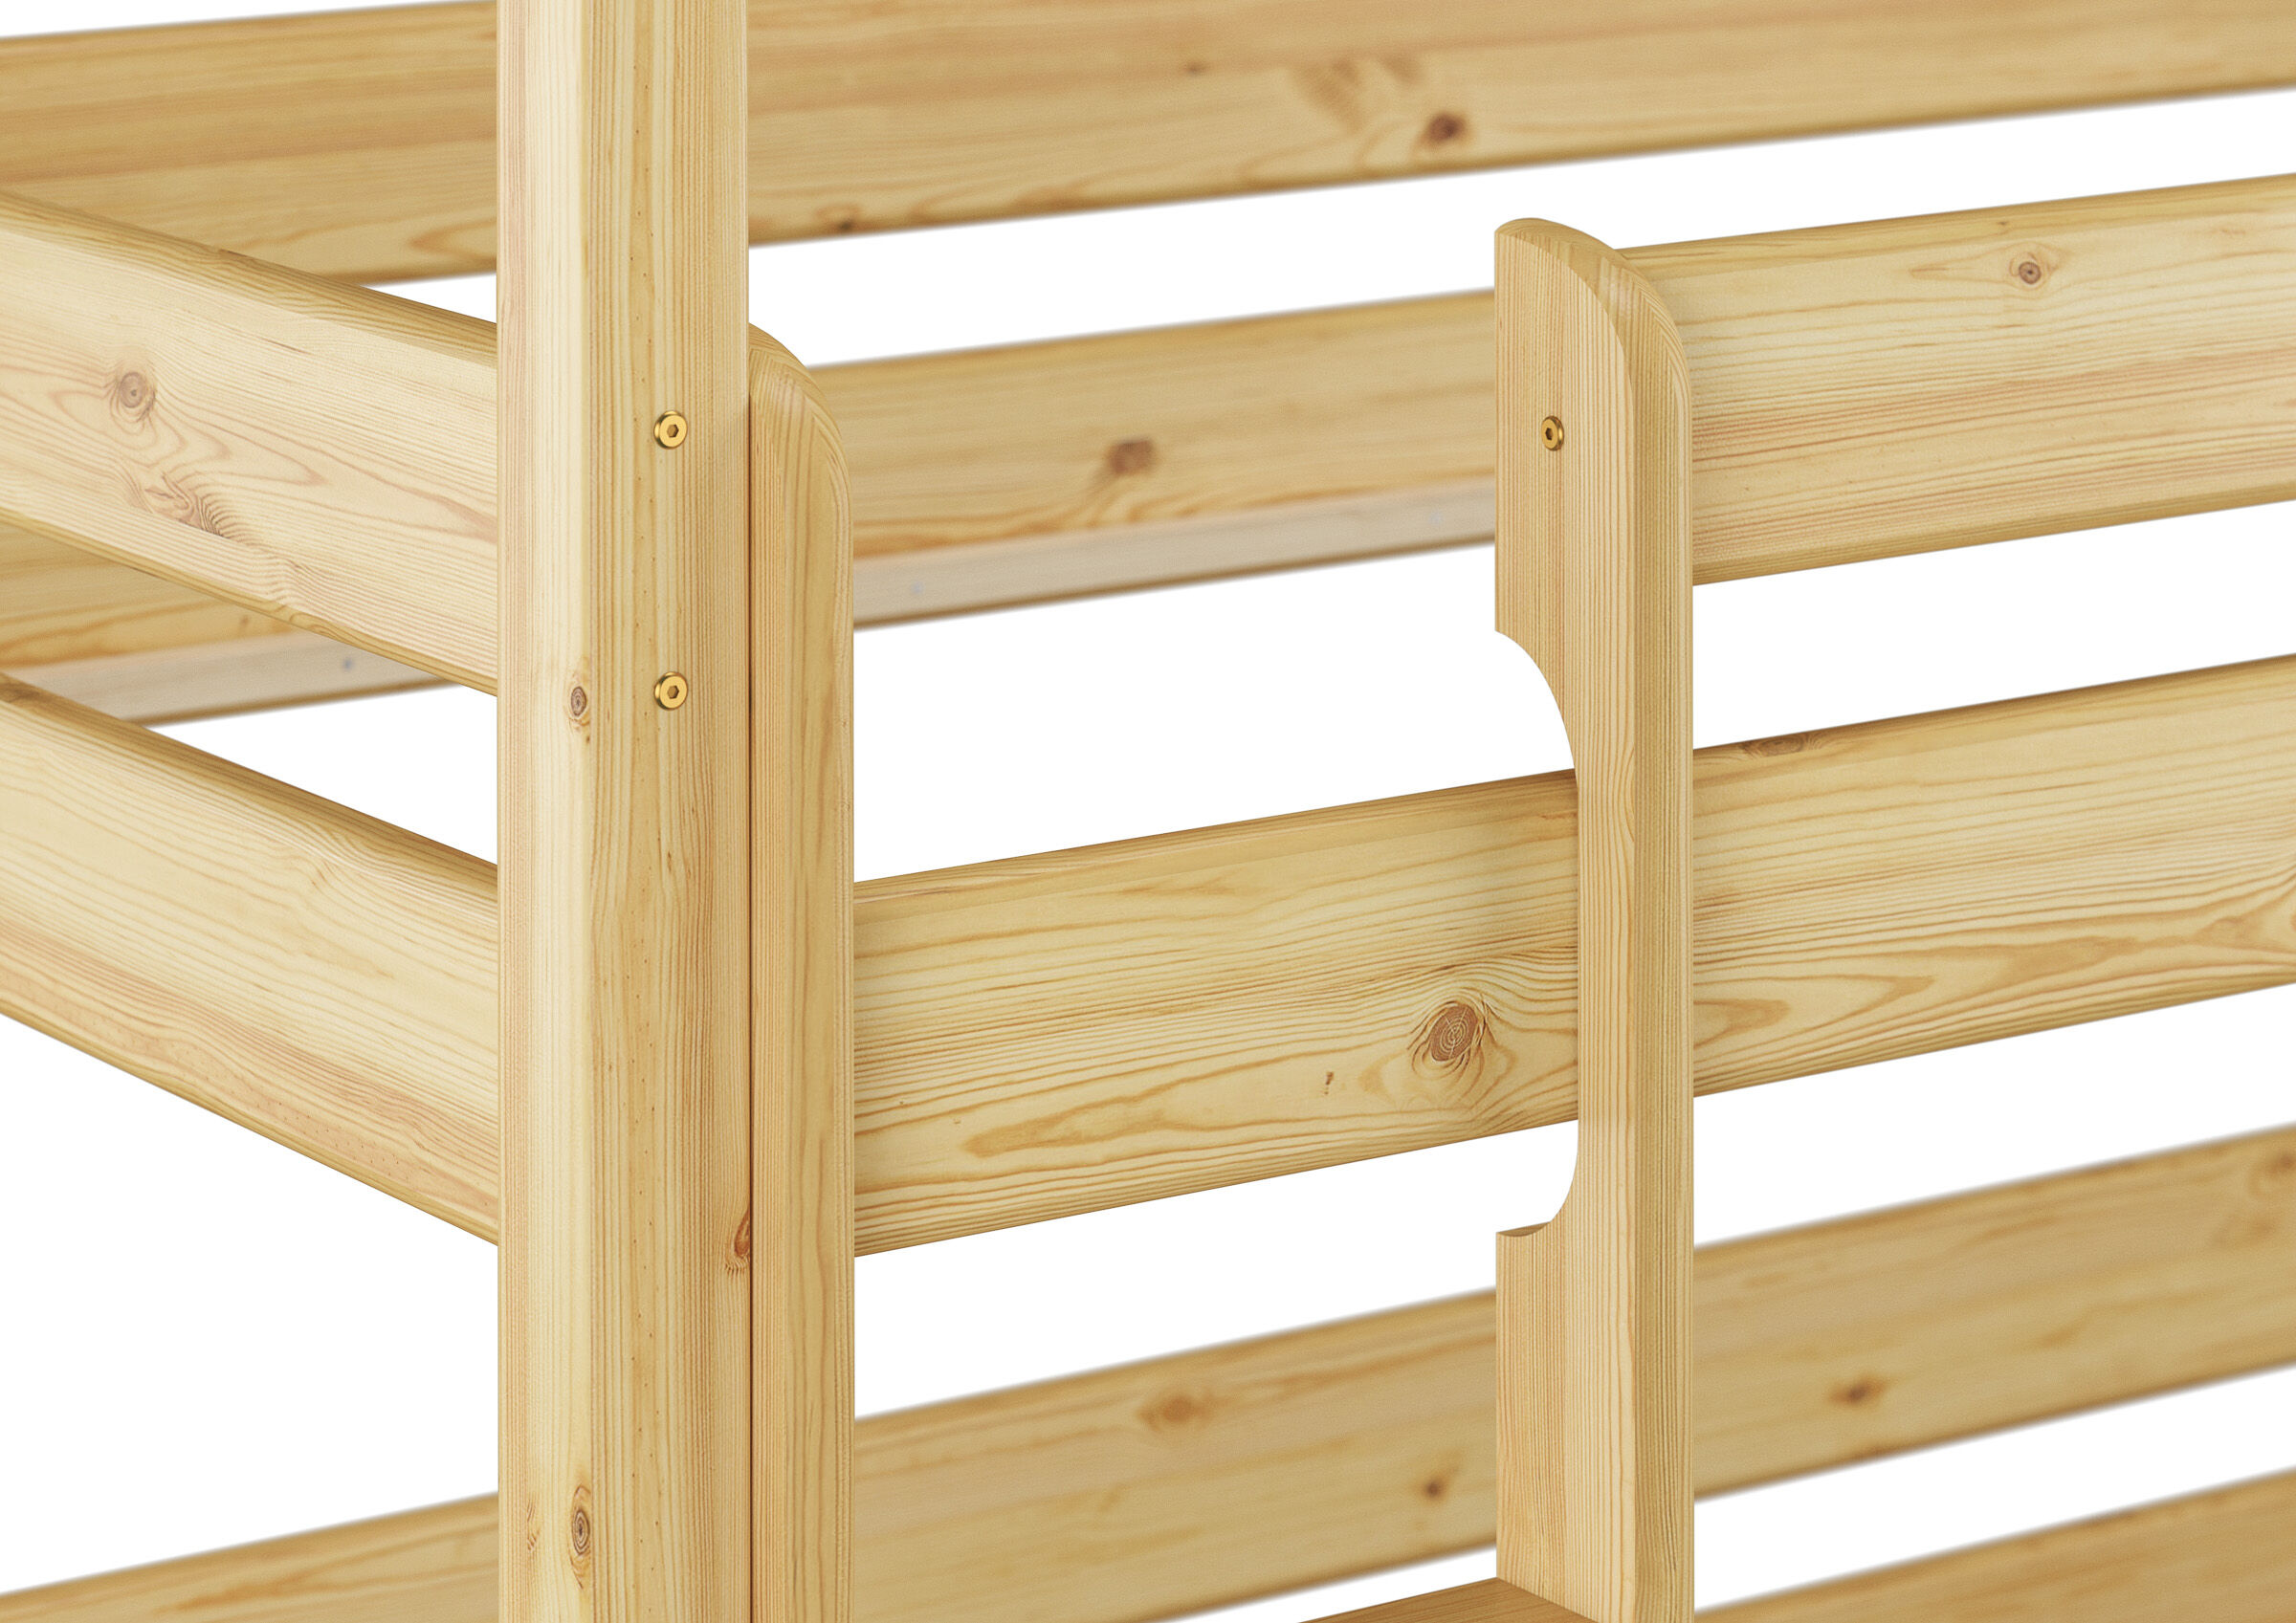 Tre varianti di letto a castello triplo per adulti 90x200 in legno massello di pino V-60.03-09